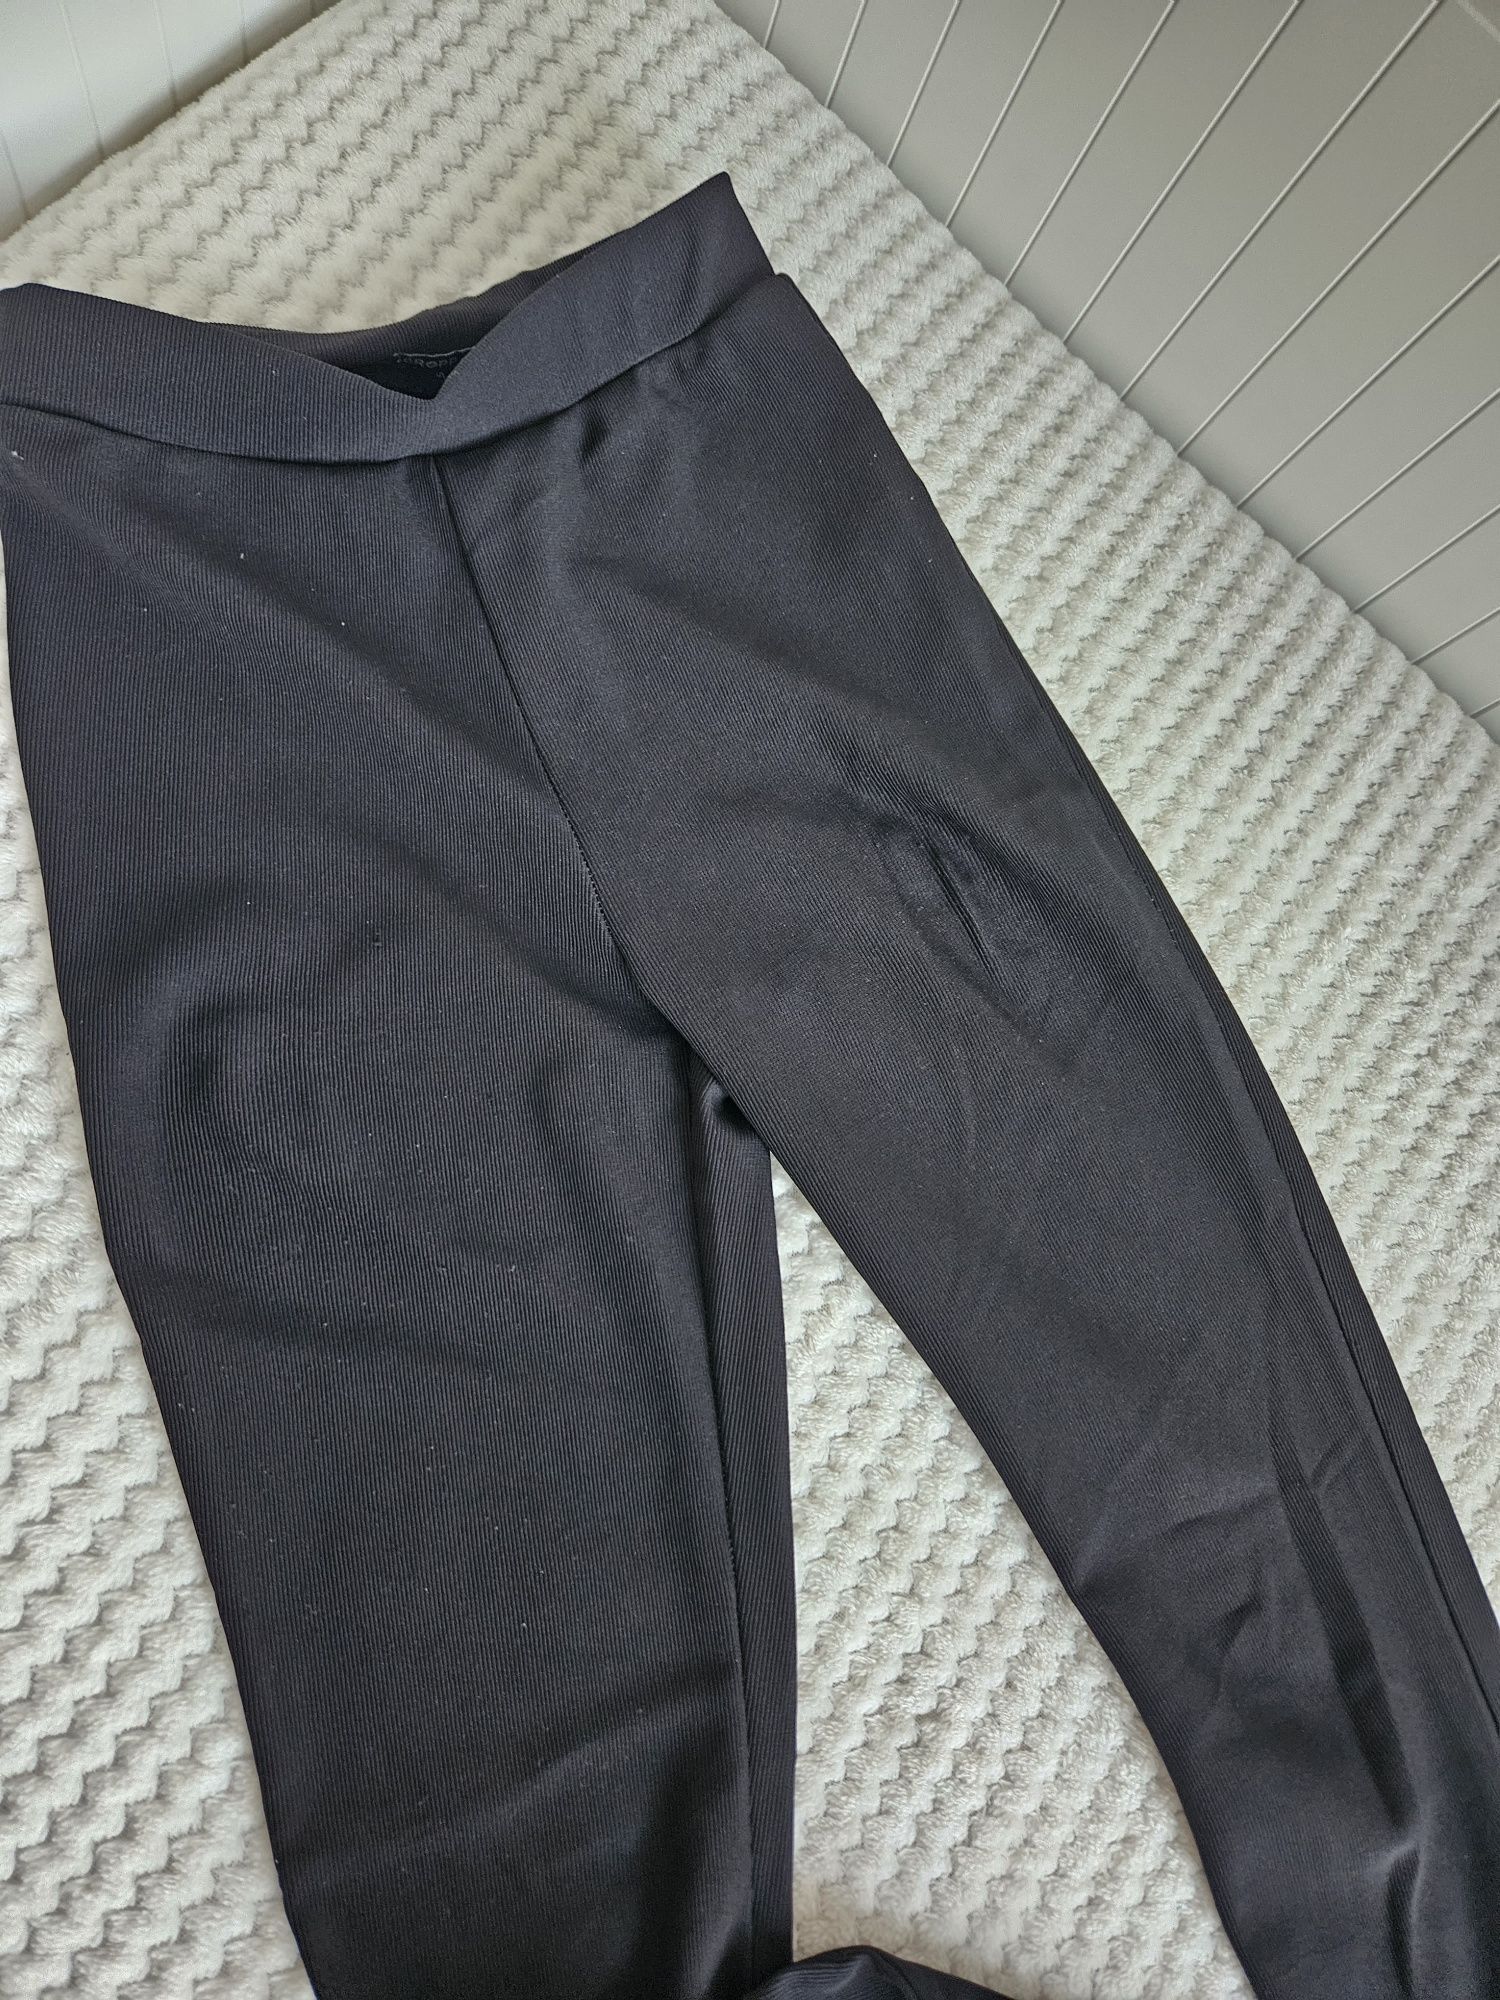 Spodnie/legginsy damskie prazkowane xs Cropp